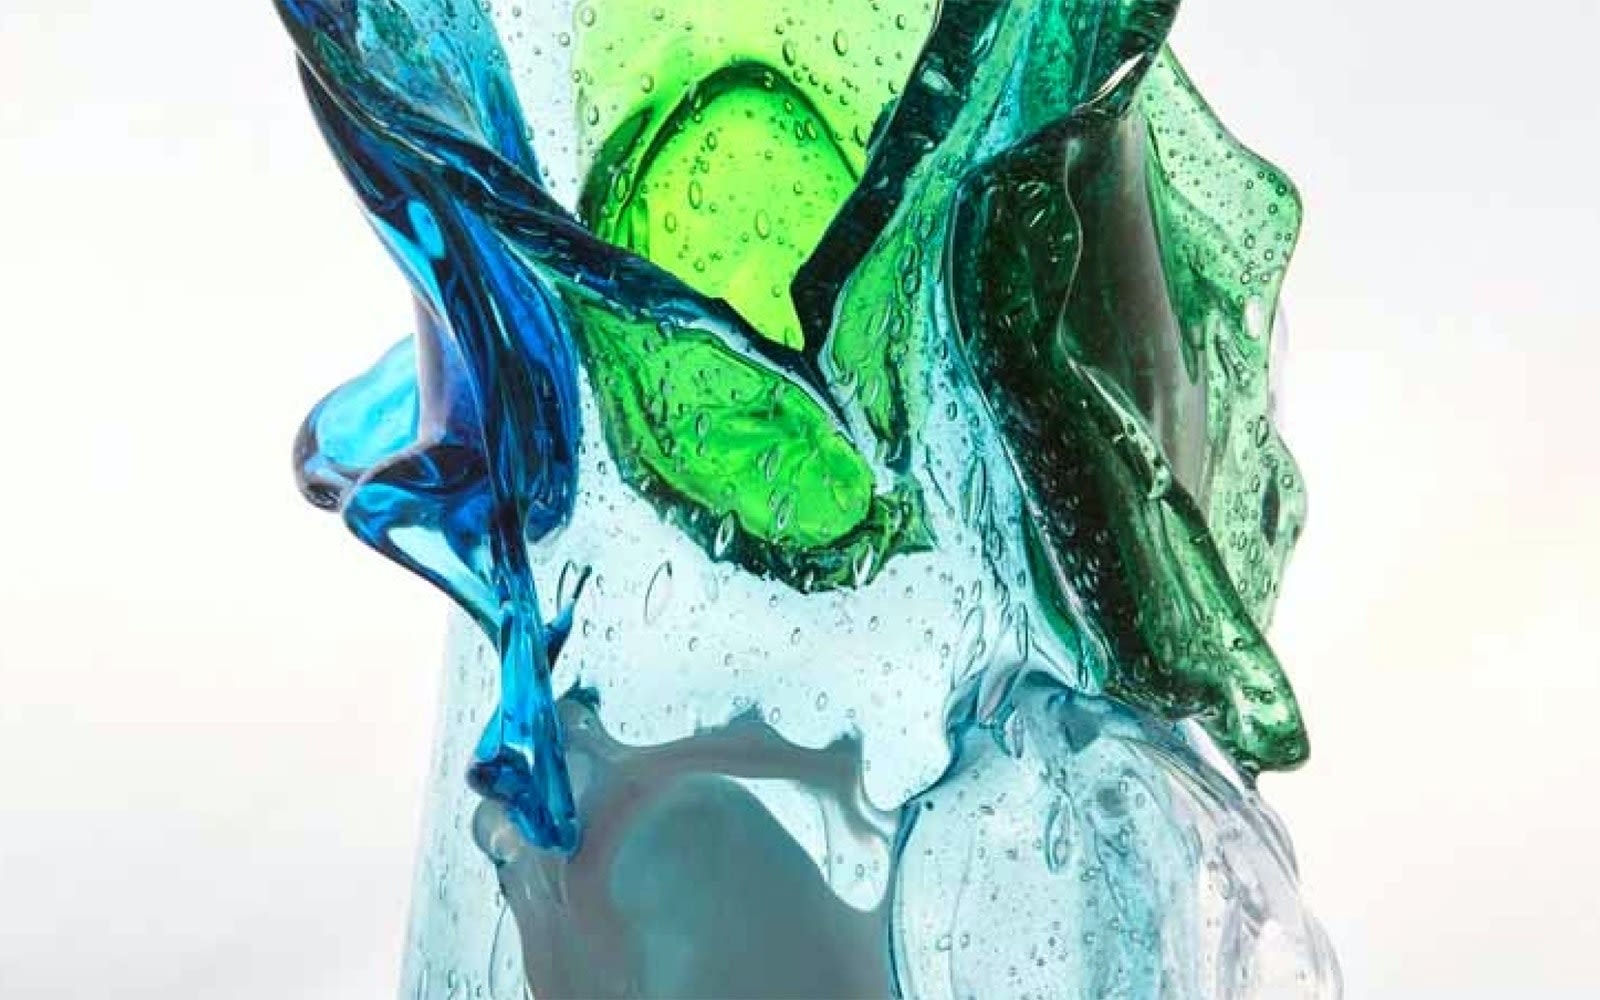 Editorial Splash 3 - EMO laddar glasföremål med mod